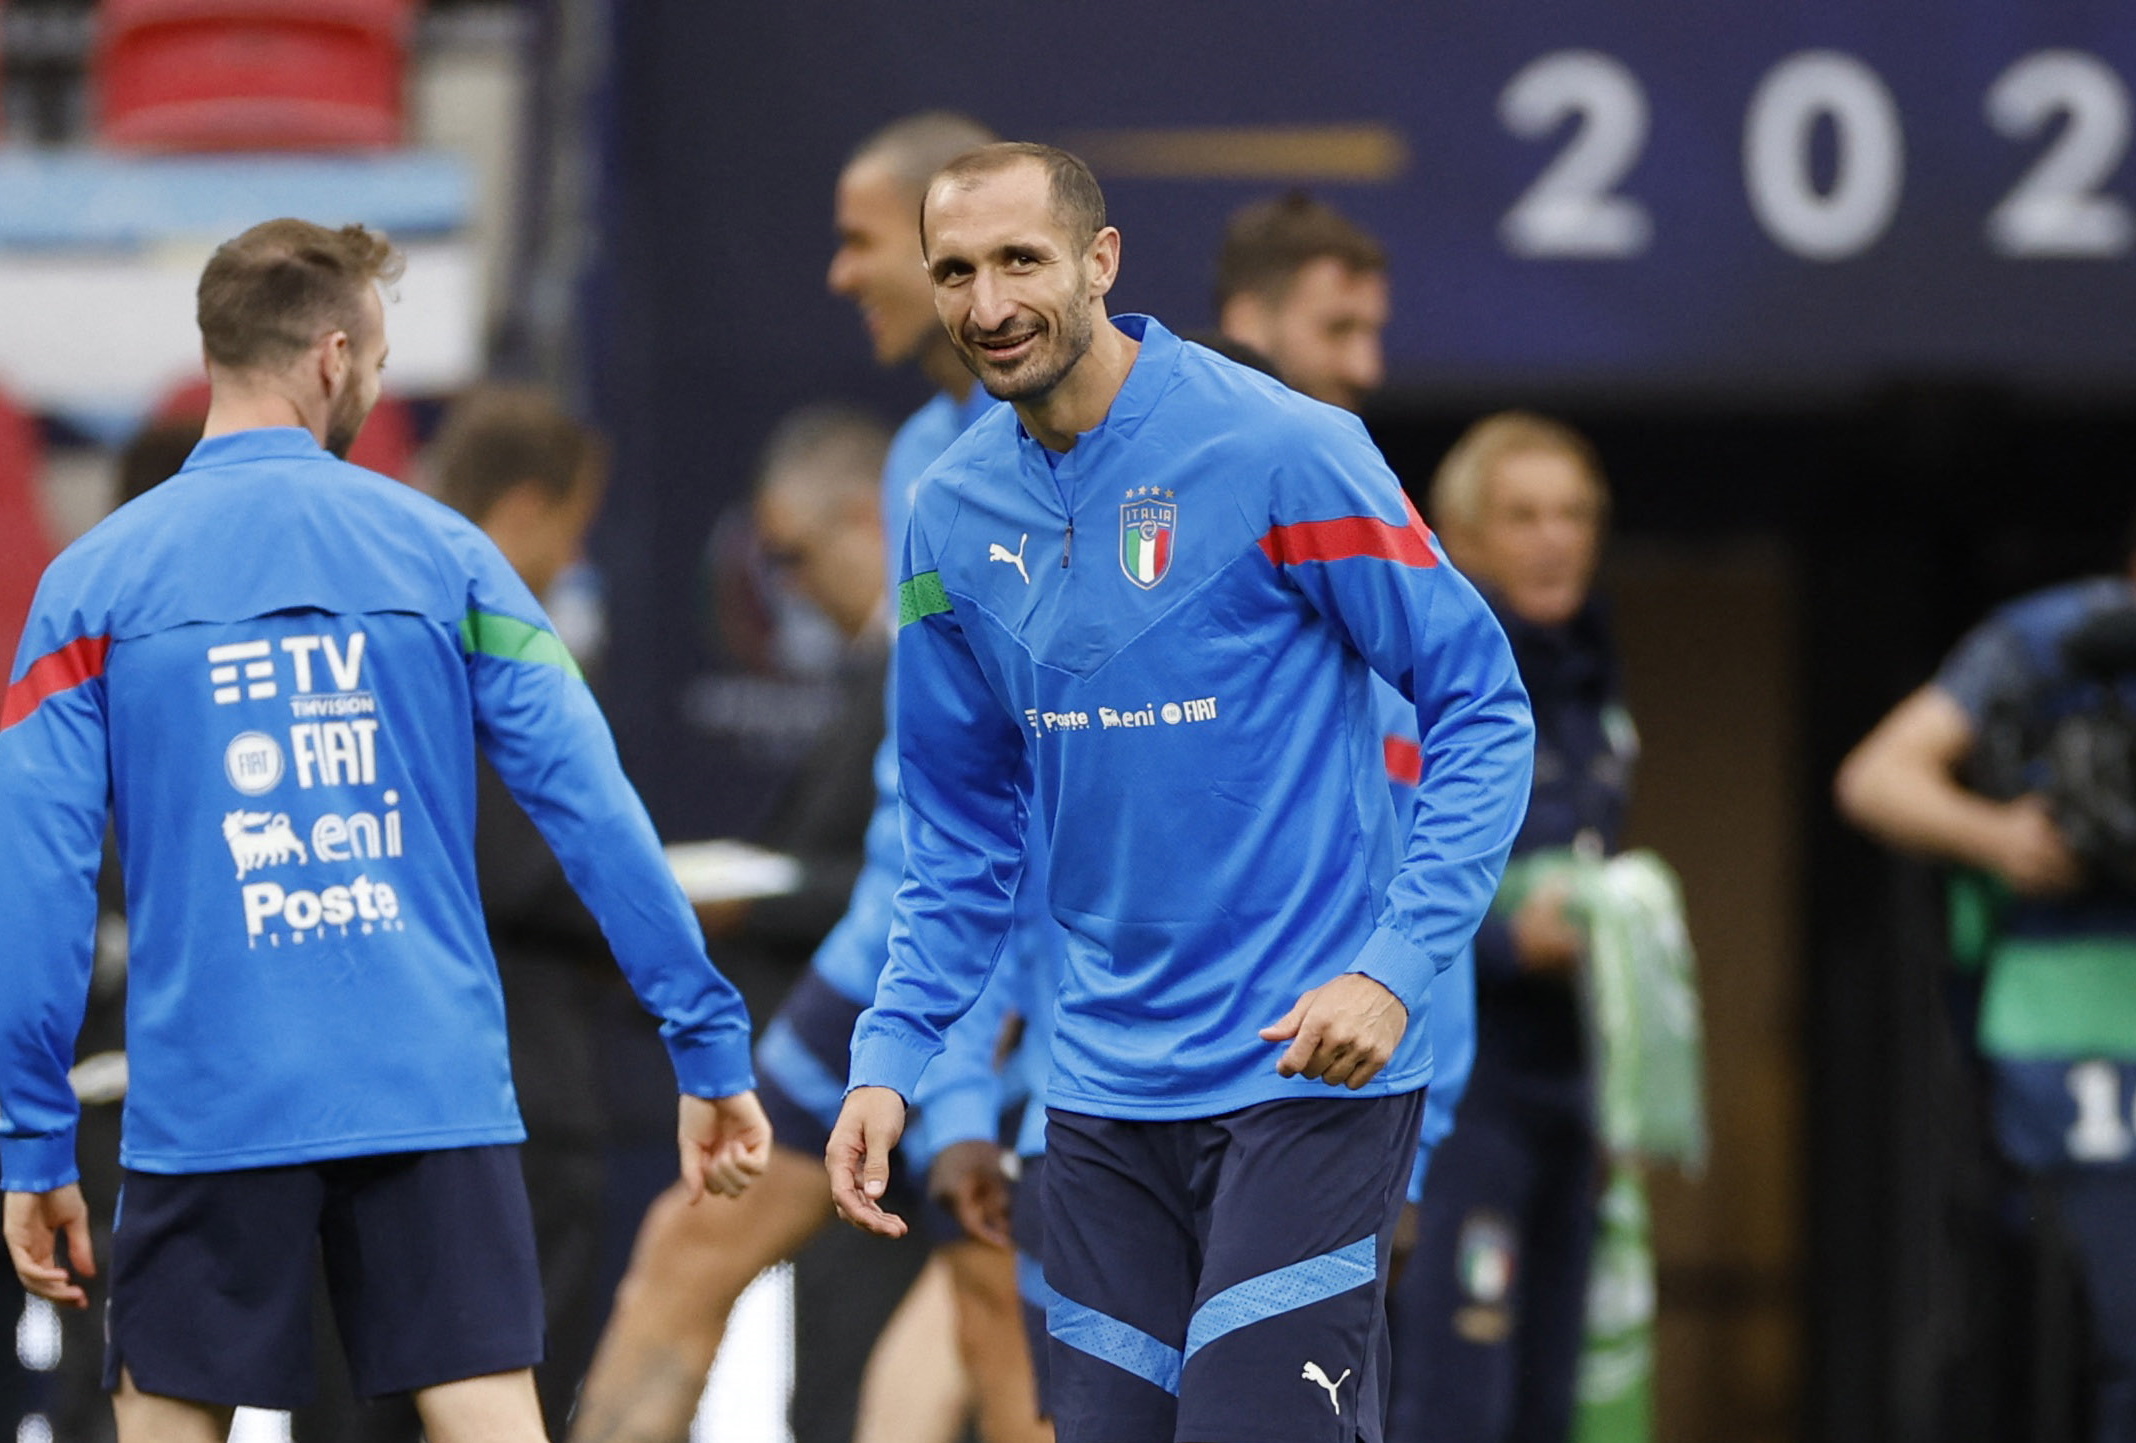 Τζιόρτζιο Κιελίνι: To συγκινητικό μήνυμα για το τελευταίο του ματς στην εθνική Ιταλίας